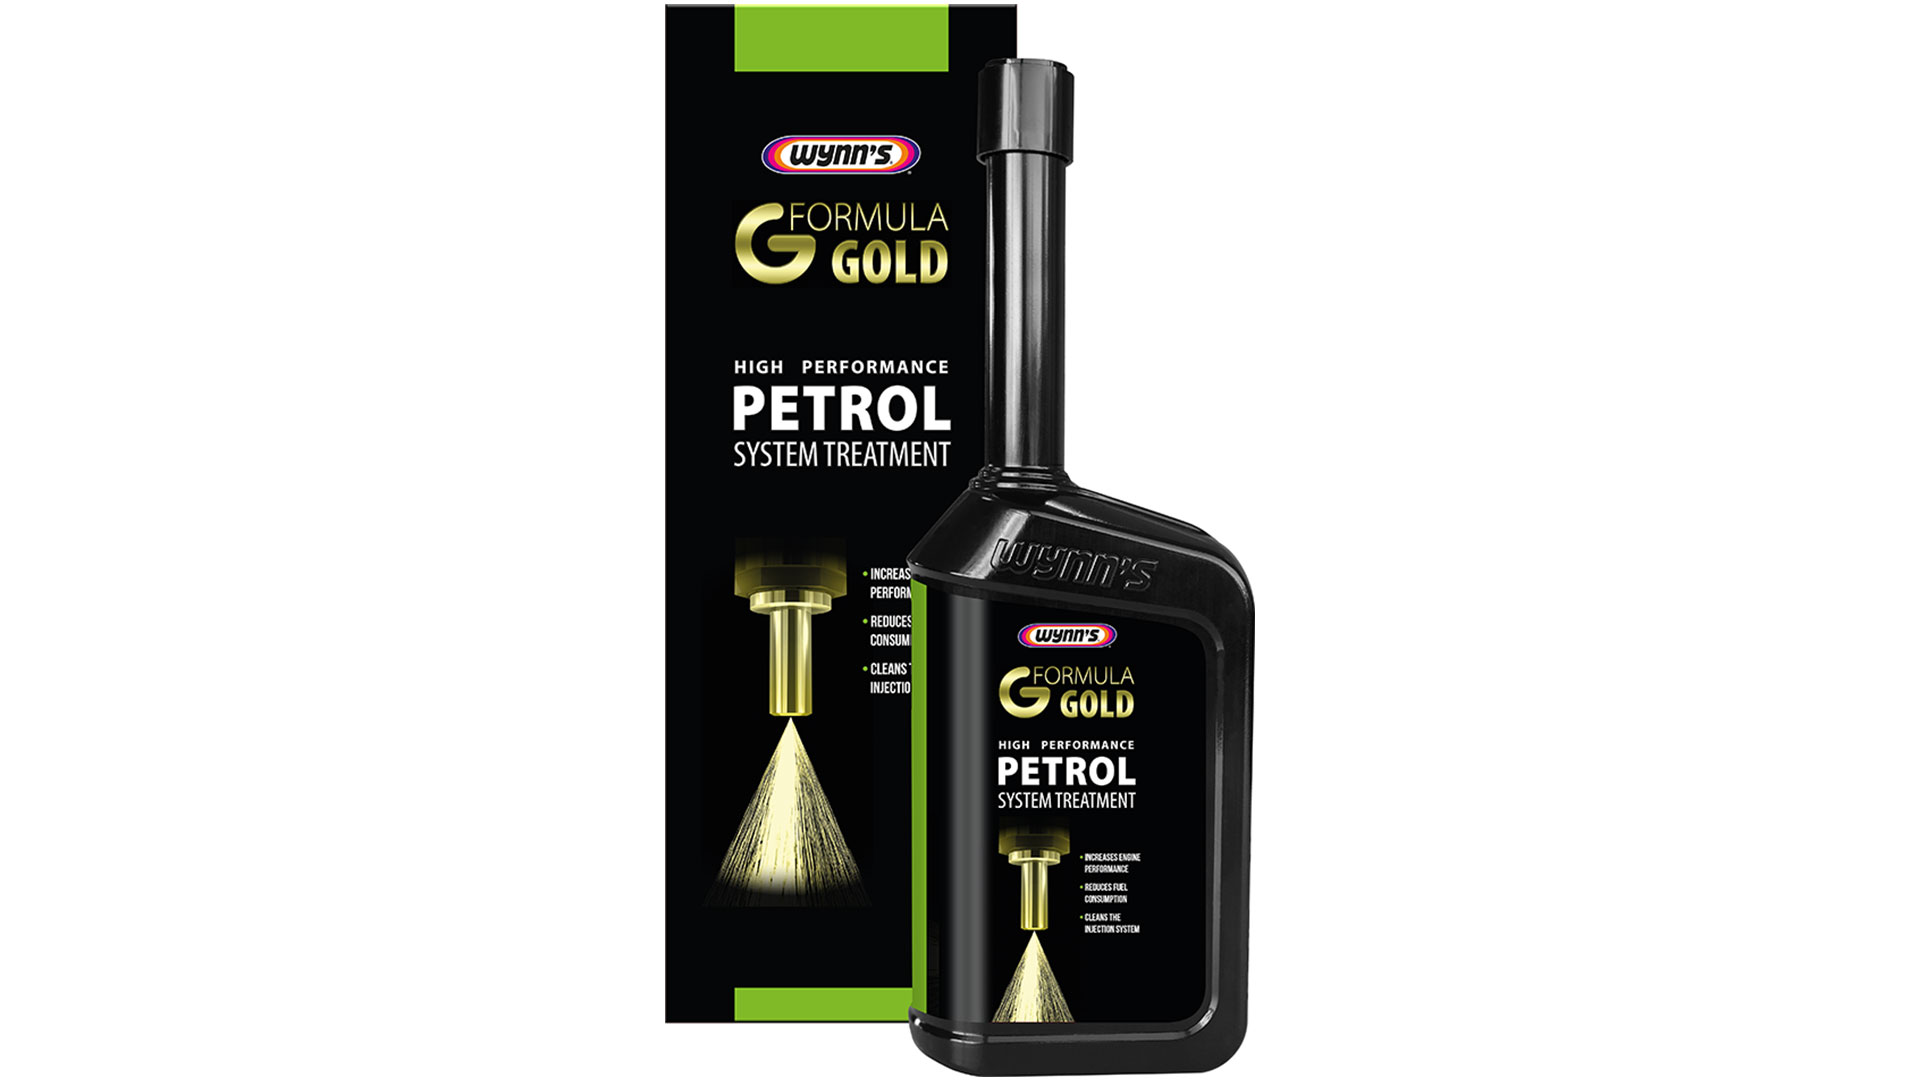 wynns formula gold high performance petrol system treatment